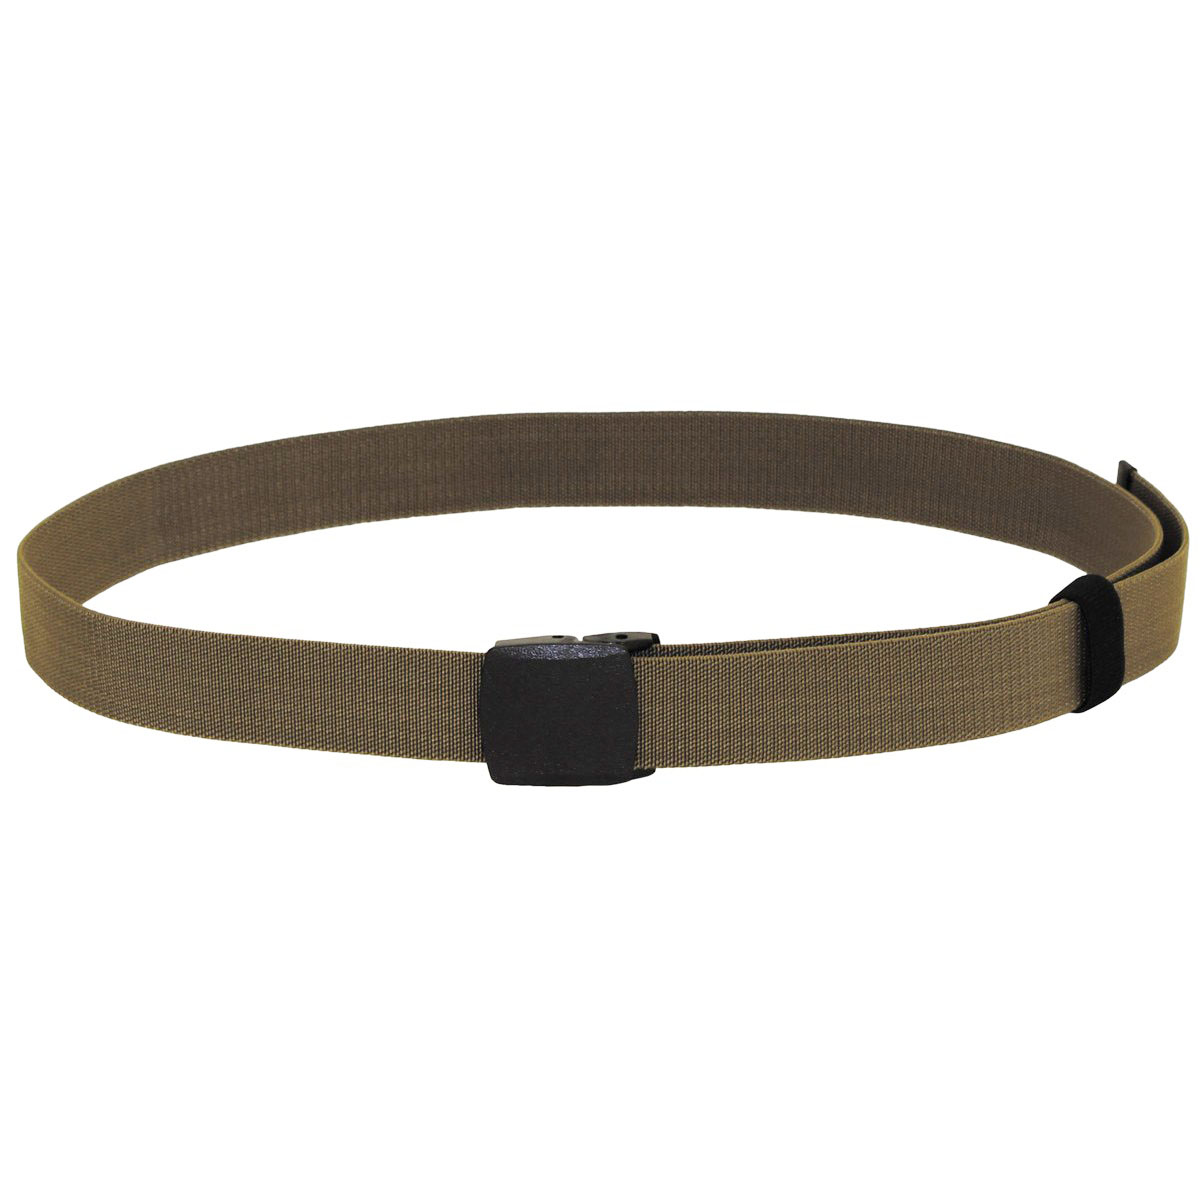 Tactical elastic belt in 3 colors